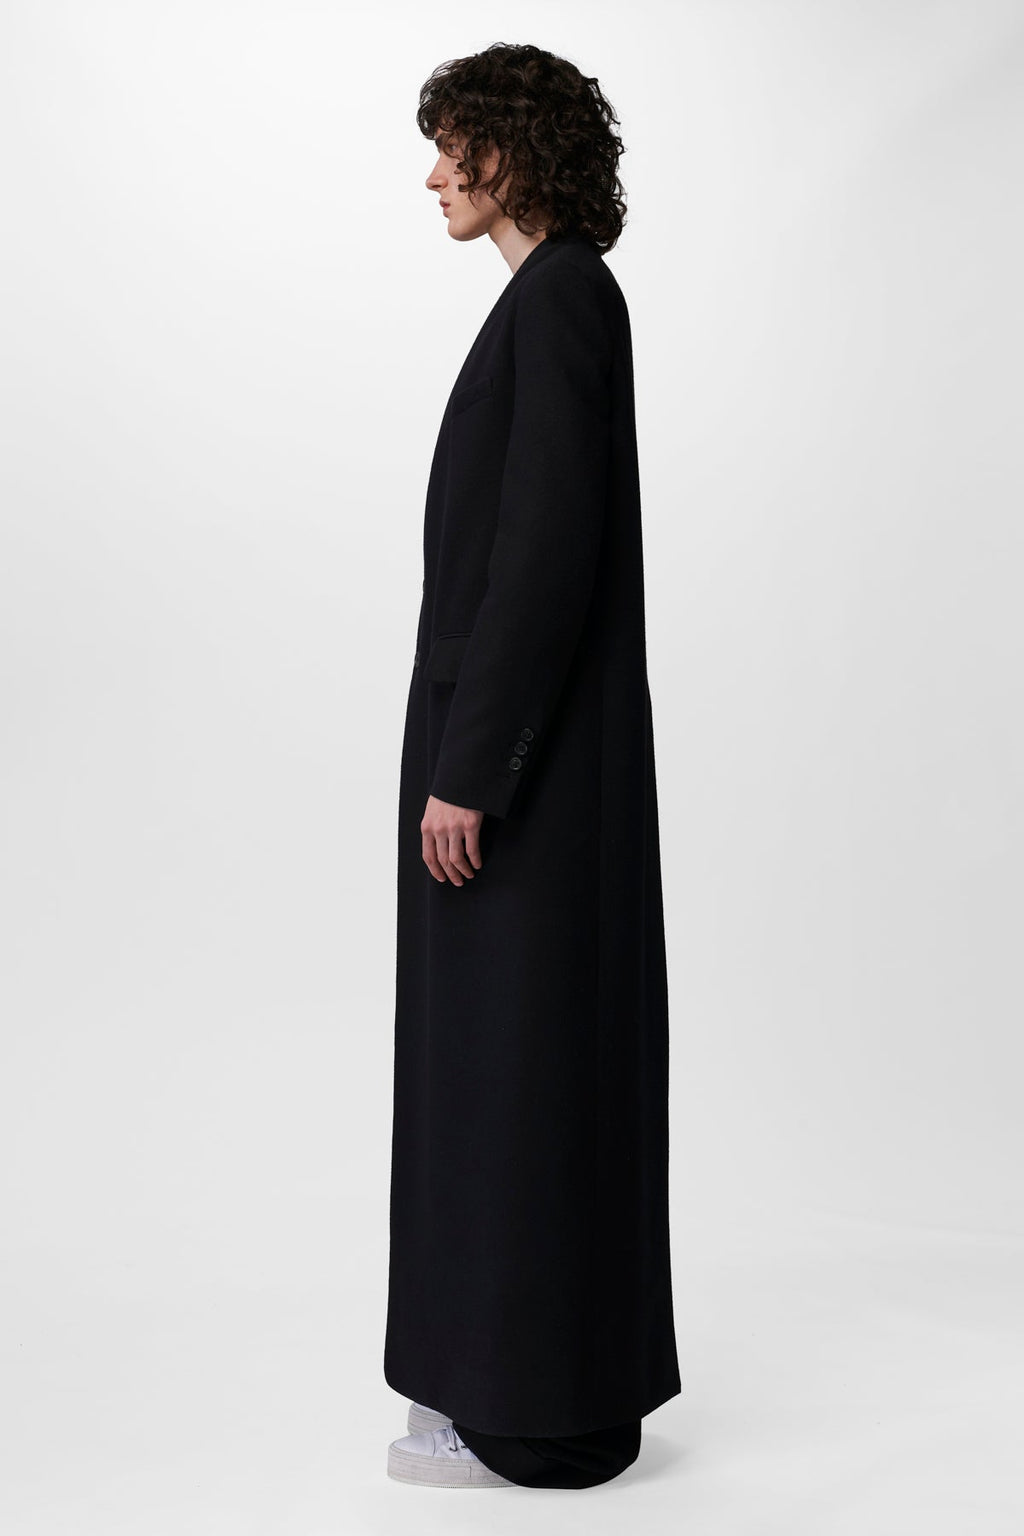 Francois Standard – Coat Tailored Demeulemeester Ann